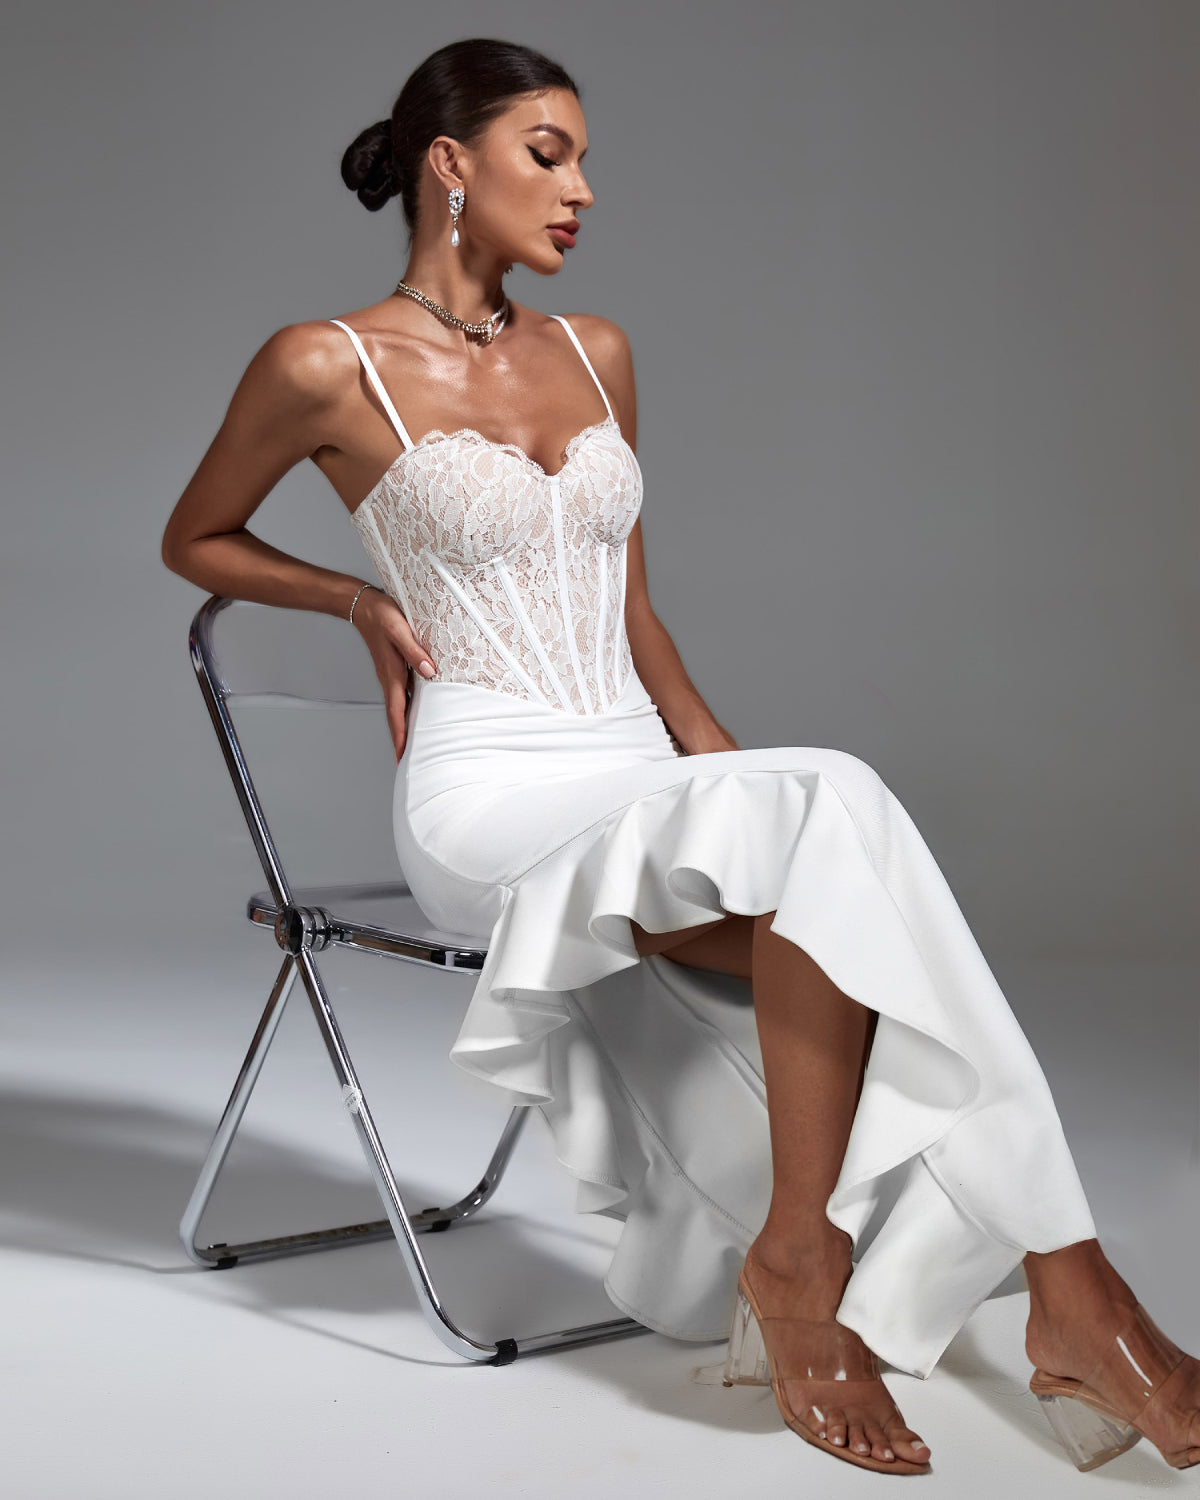 White Lace Corset & Ruffled Bandage Dress